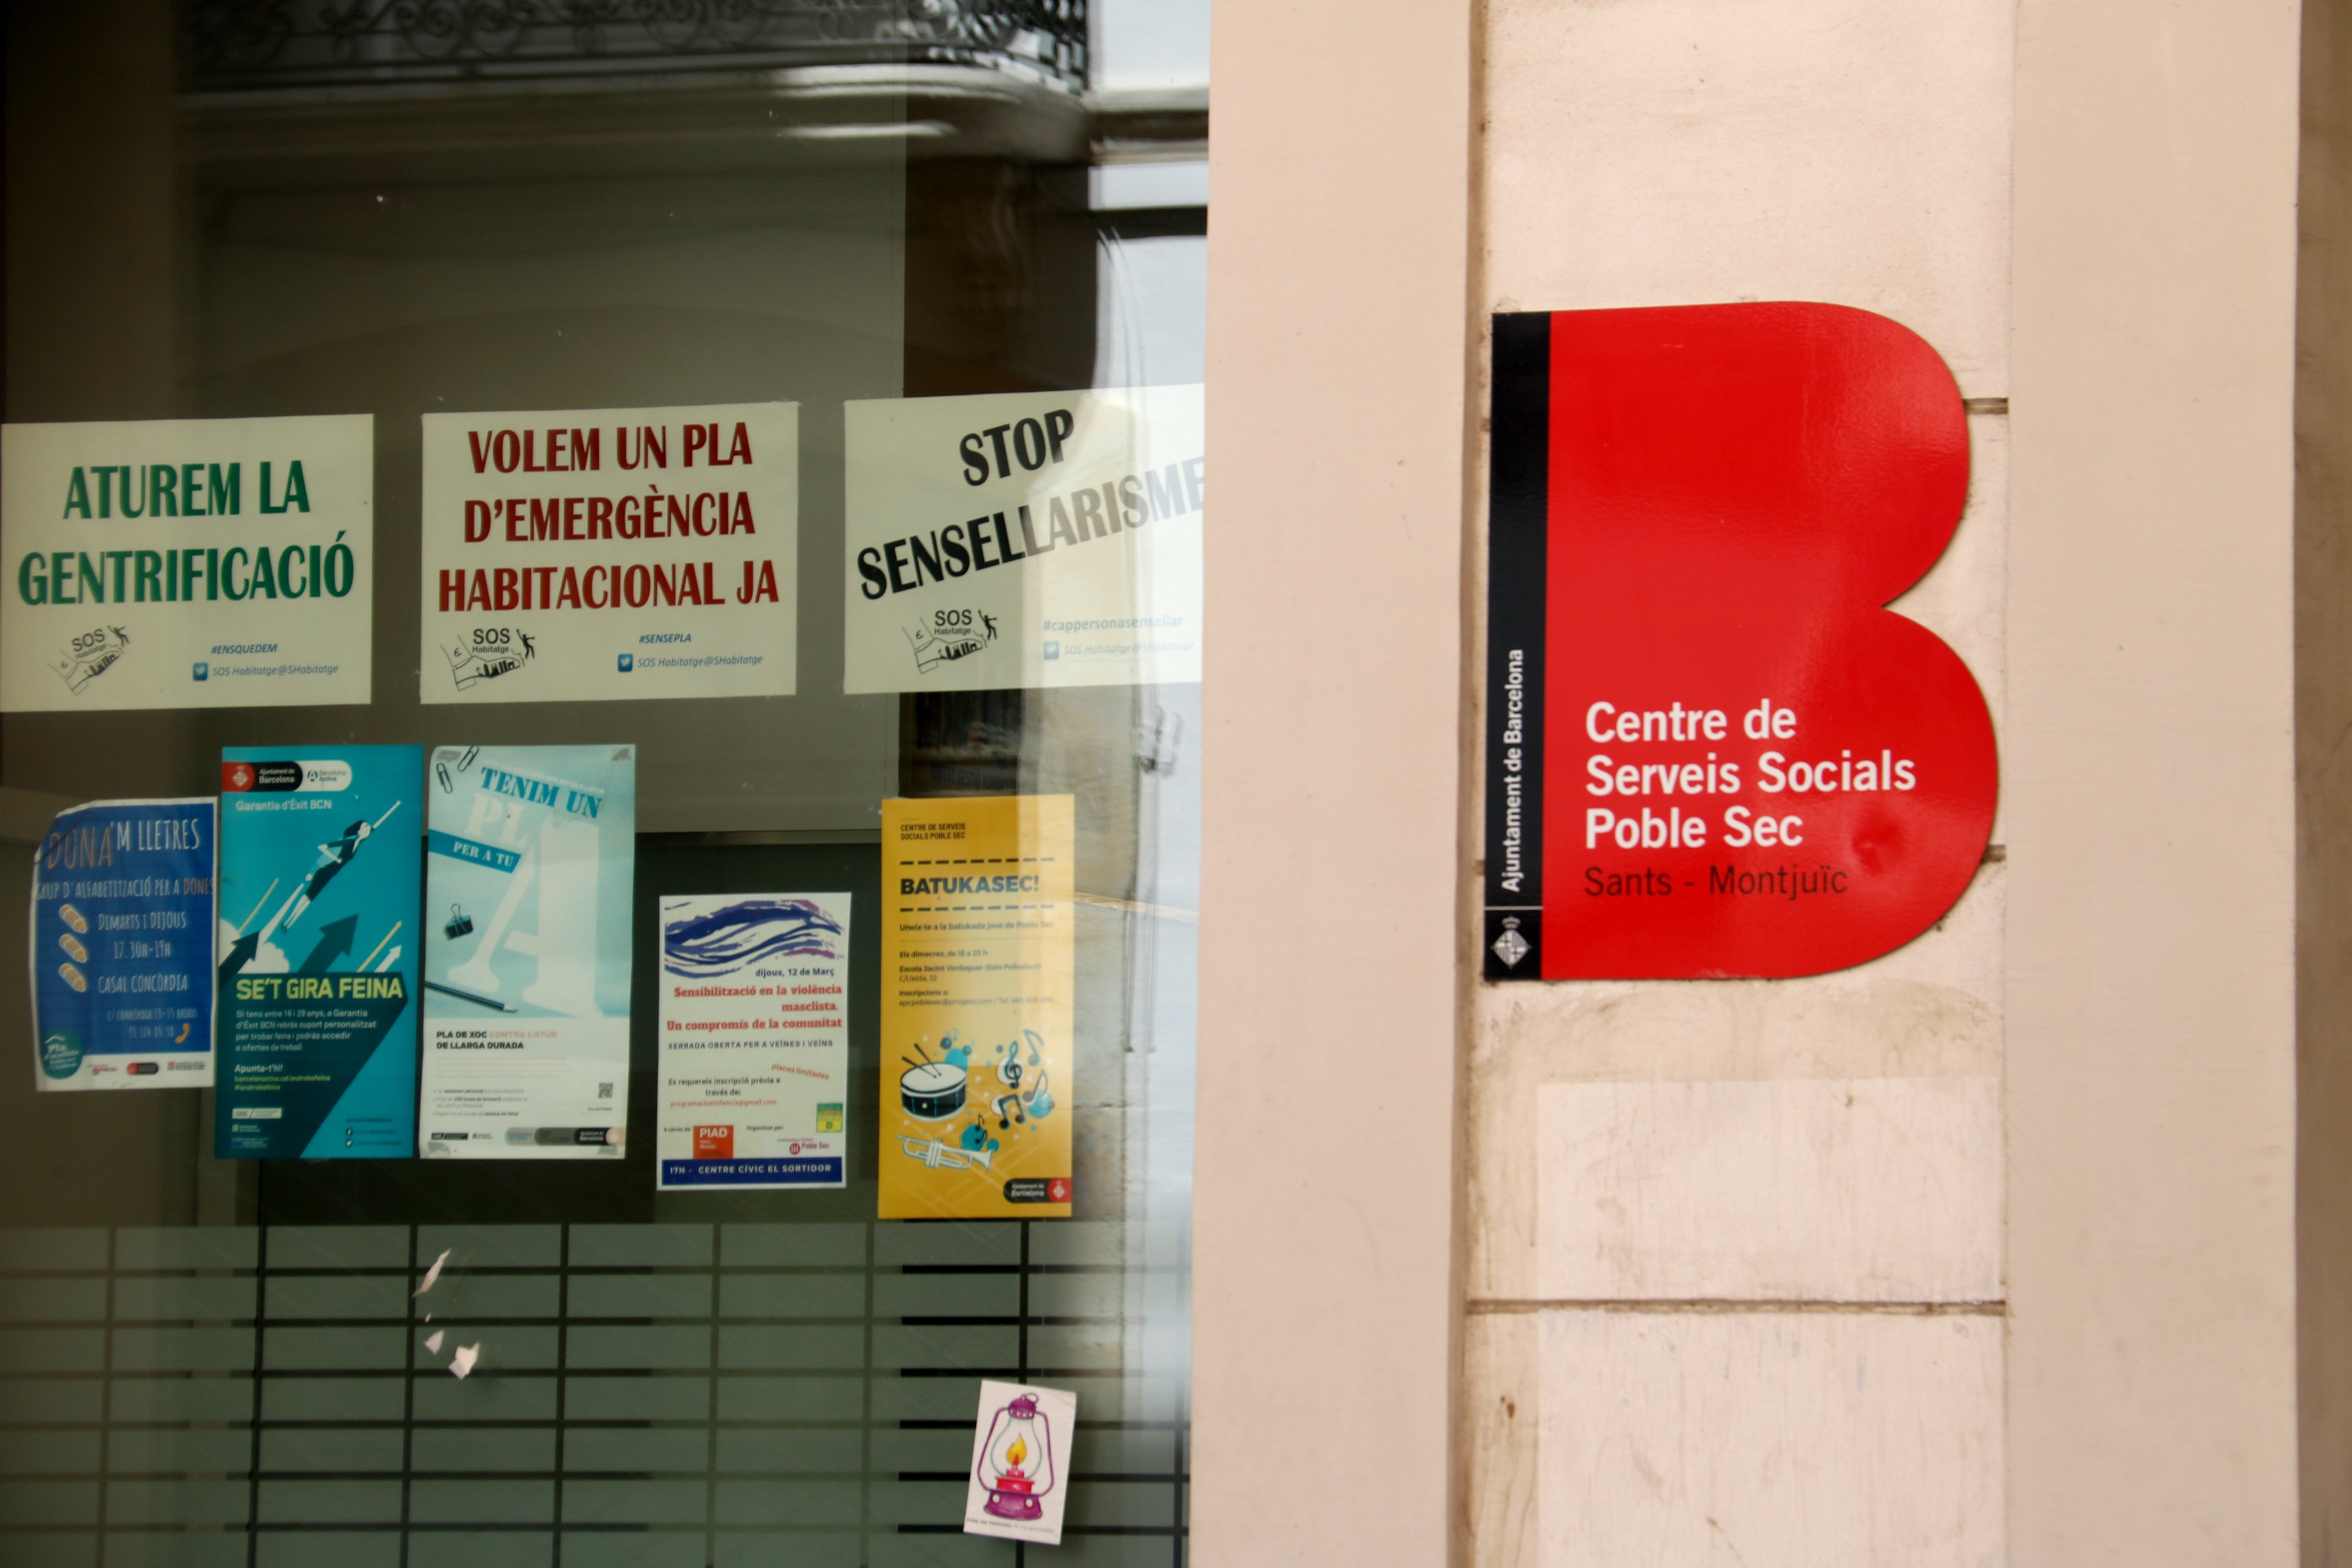 Dimite el gerente del Consorci de Serveis Socials de Barcelona